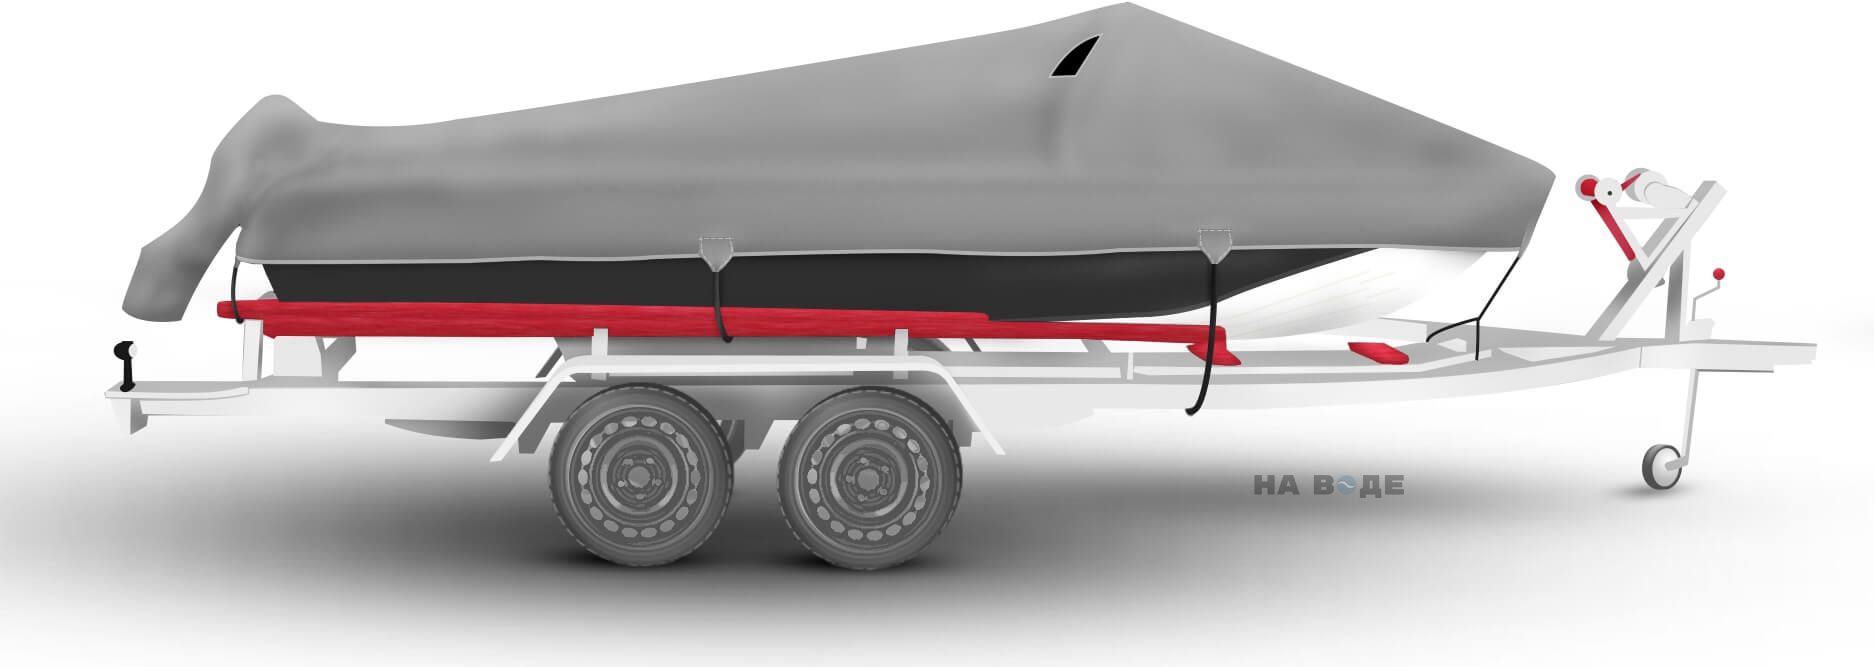 Транспортировочный тент на лодку Казанка-5М2 комплектация C накрытием мотора - фото 3